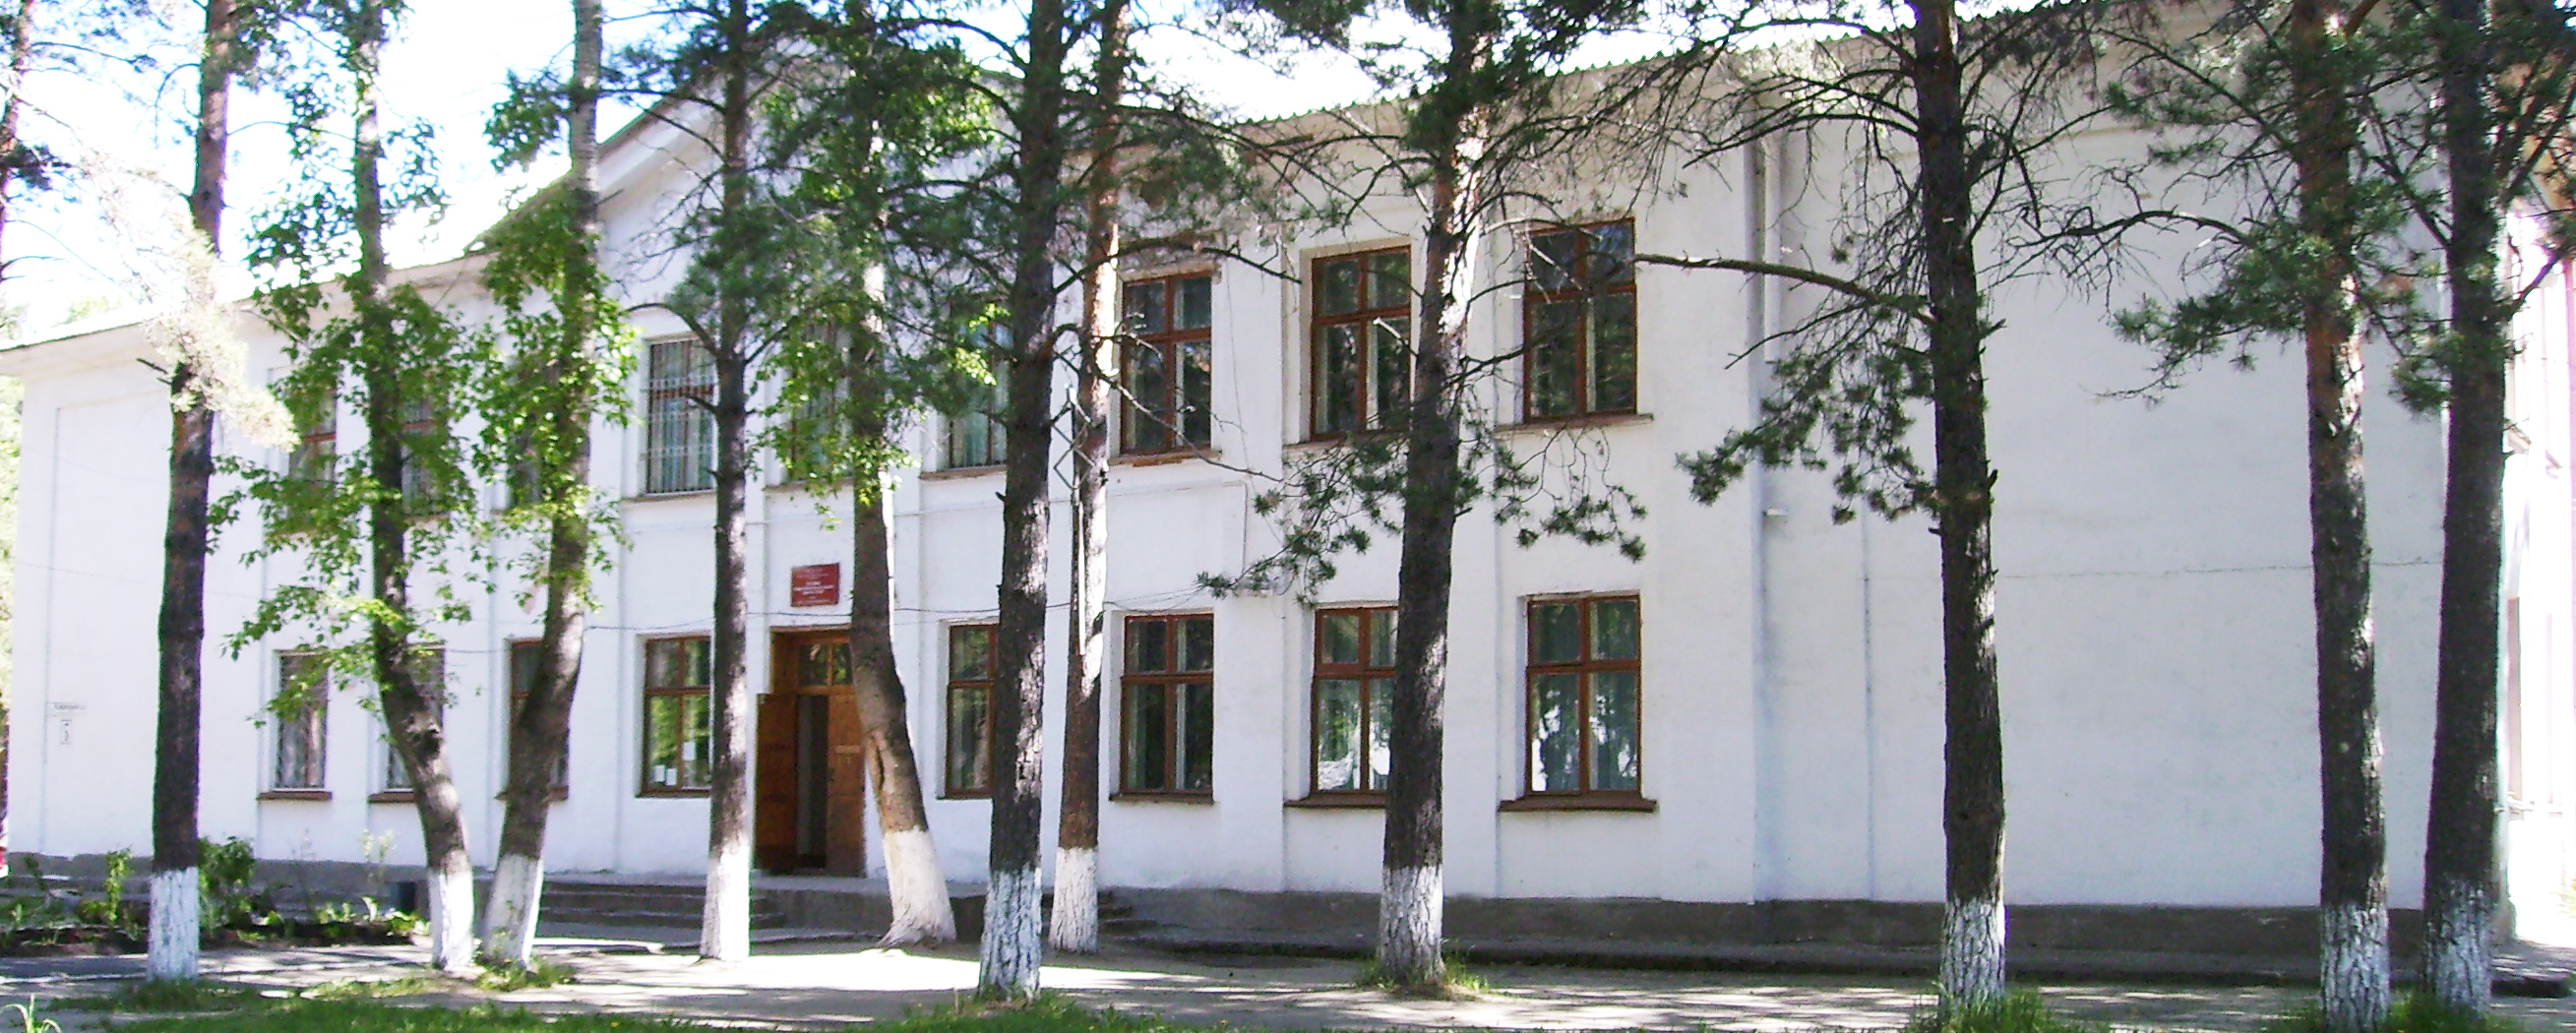 Муниципальное бюджетное общеобразовательное учреждение основная общеобразовательная школа №20 г. Канска.